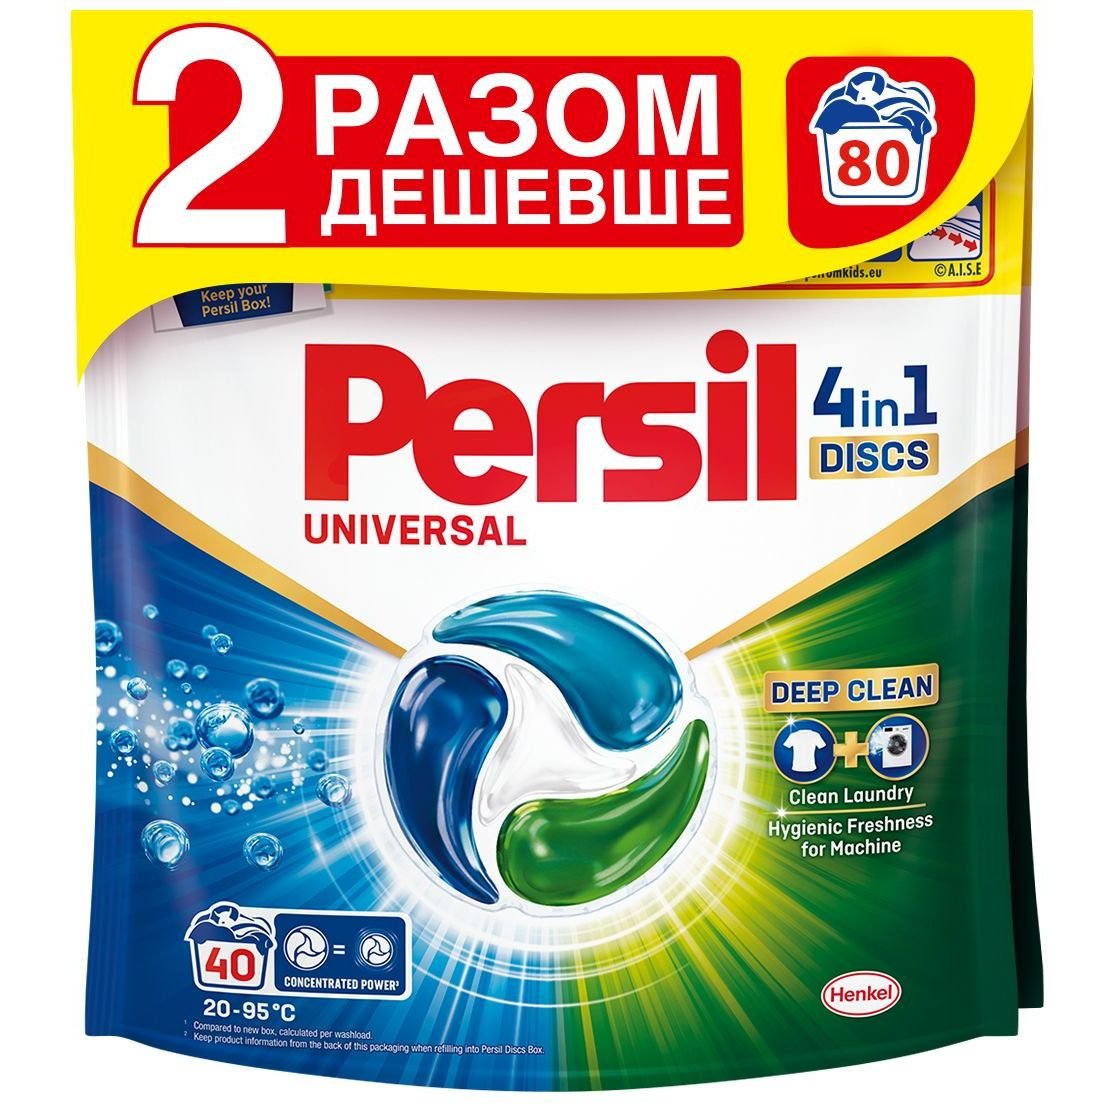 Диски для прання Persil Deep Clean Universal 4 in 1 Discs 80 шт. (2 х 40 шт.) - фото 1